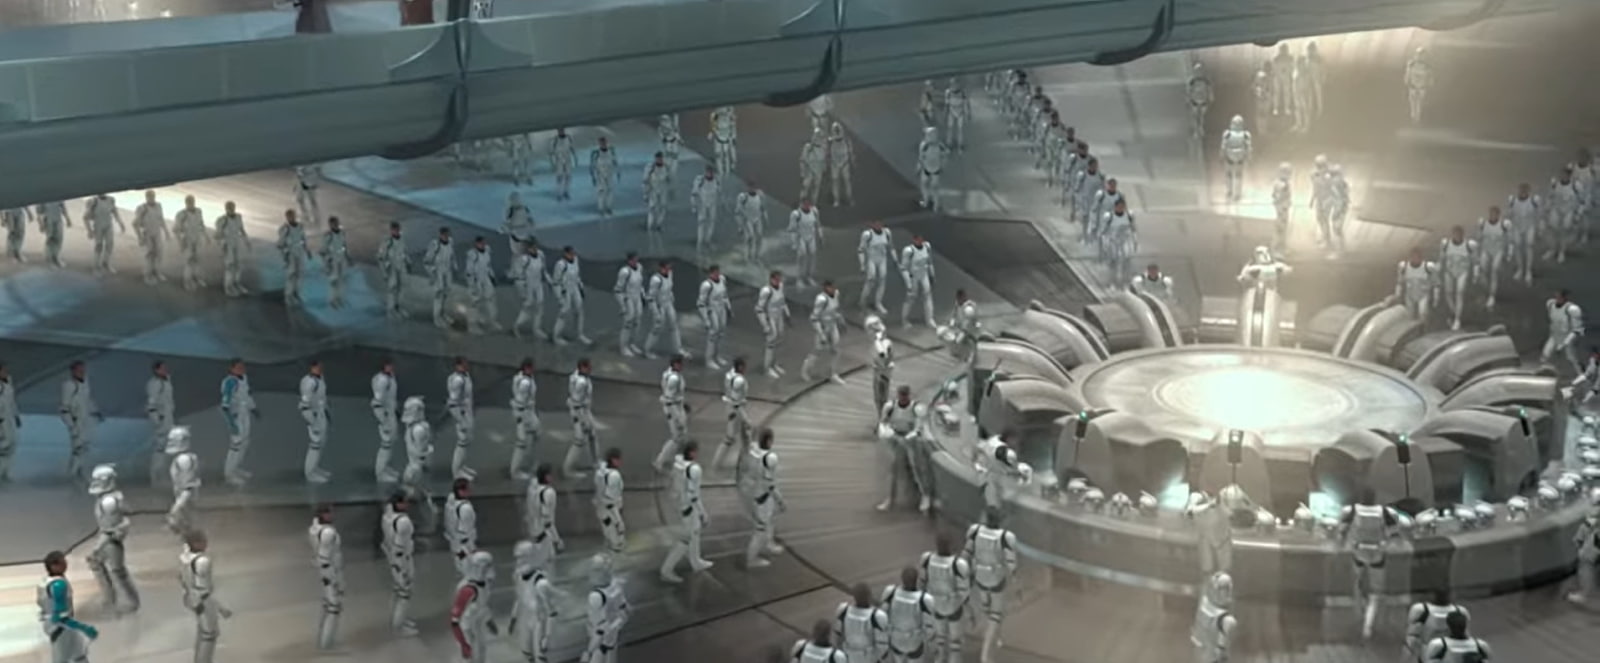 clones in a blue bulbes in a futuristic room in star wars film